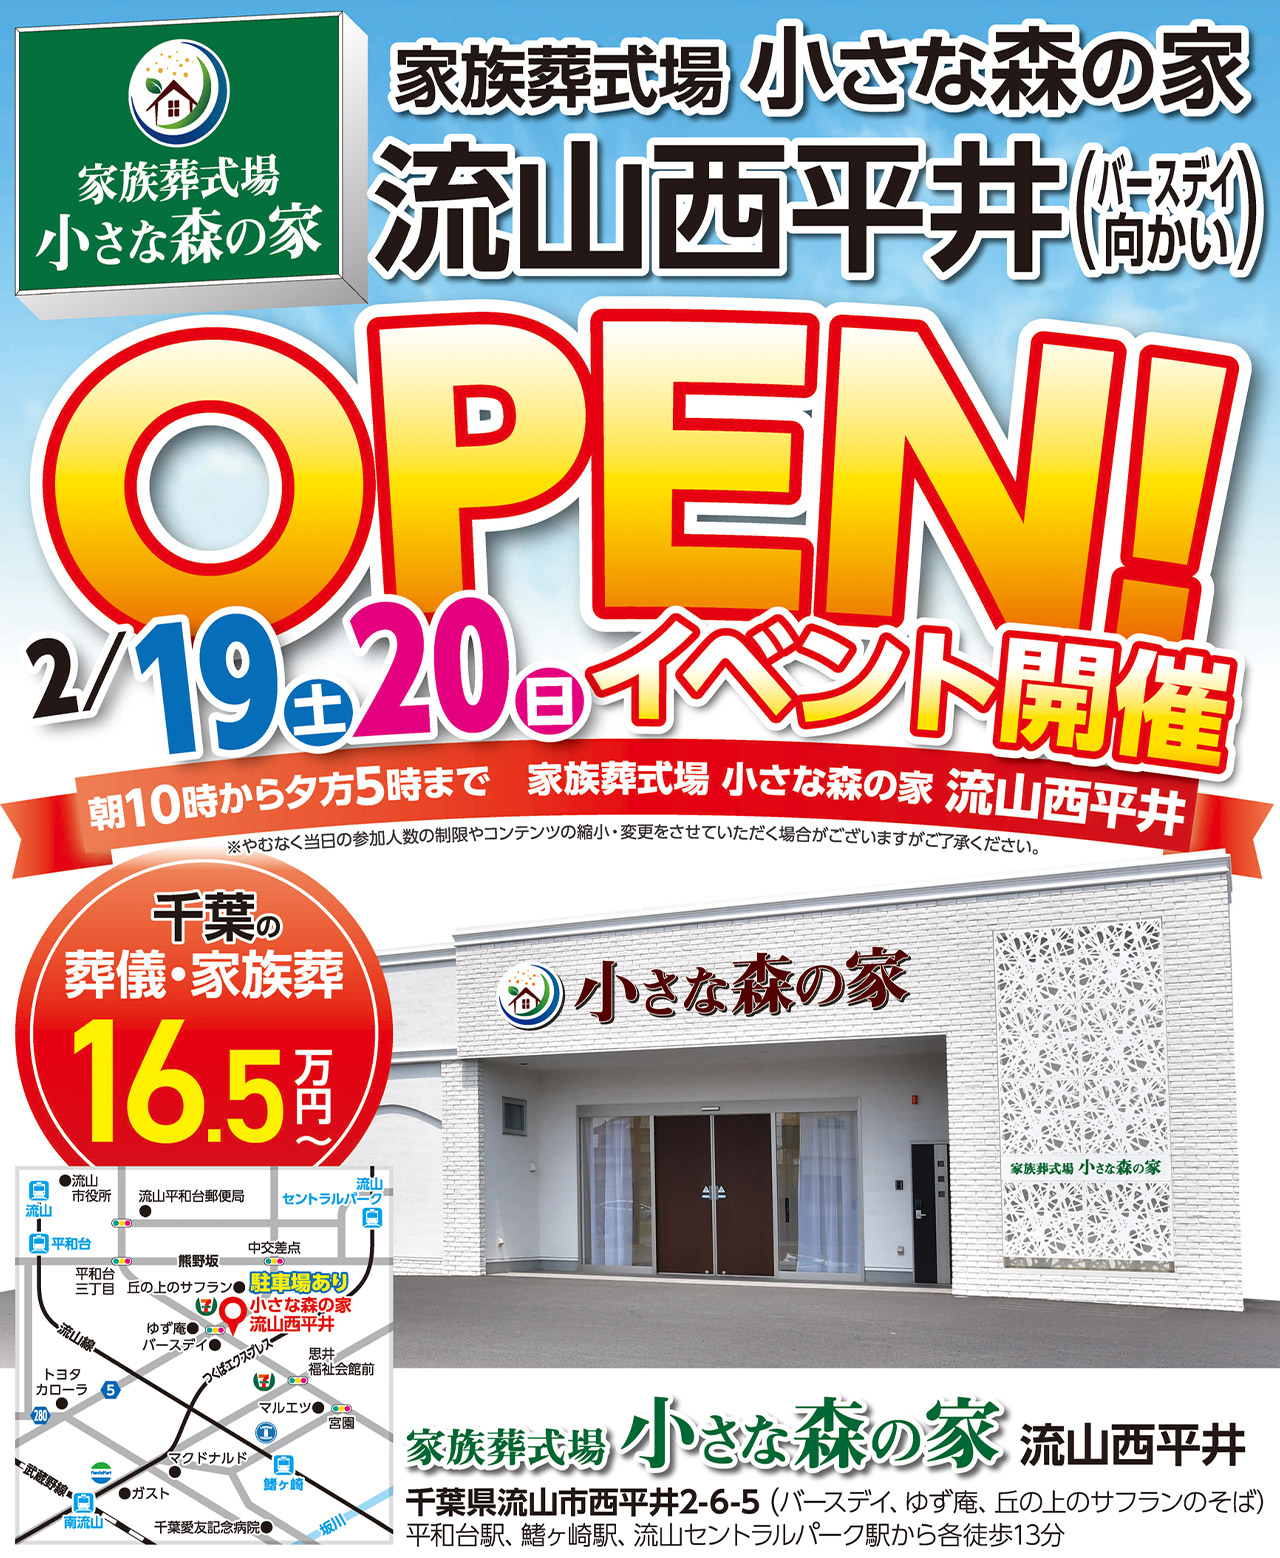 鎌ヶ谷大仏オープンイベント開催！のイメージ画像